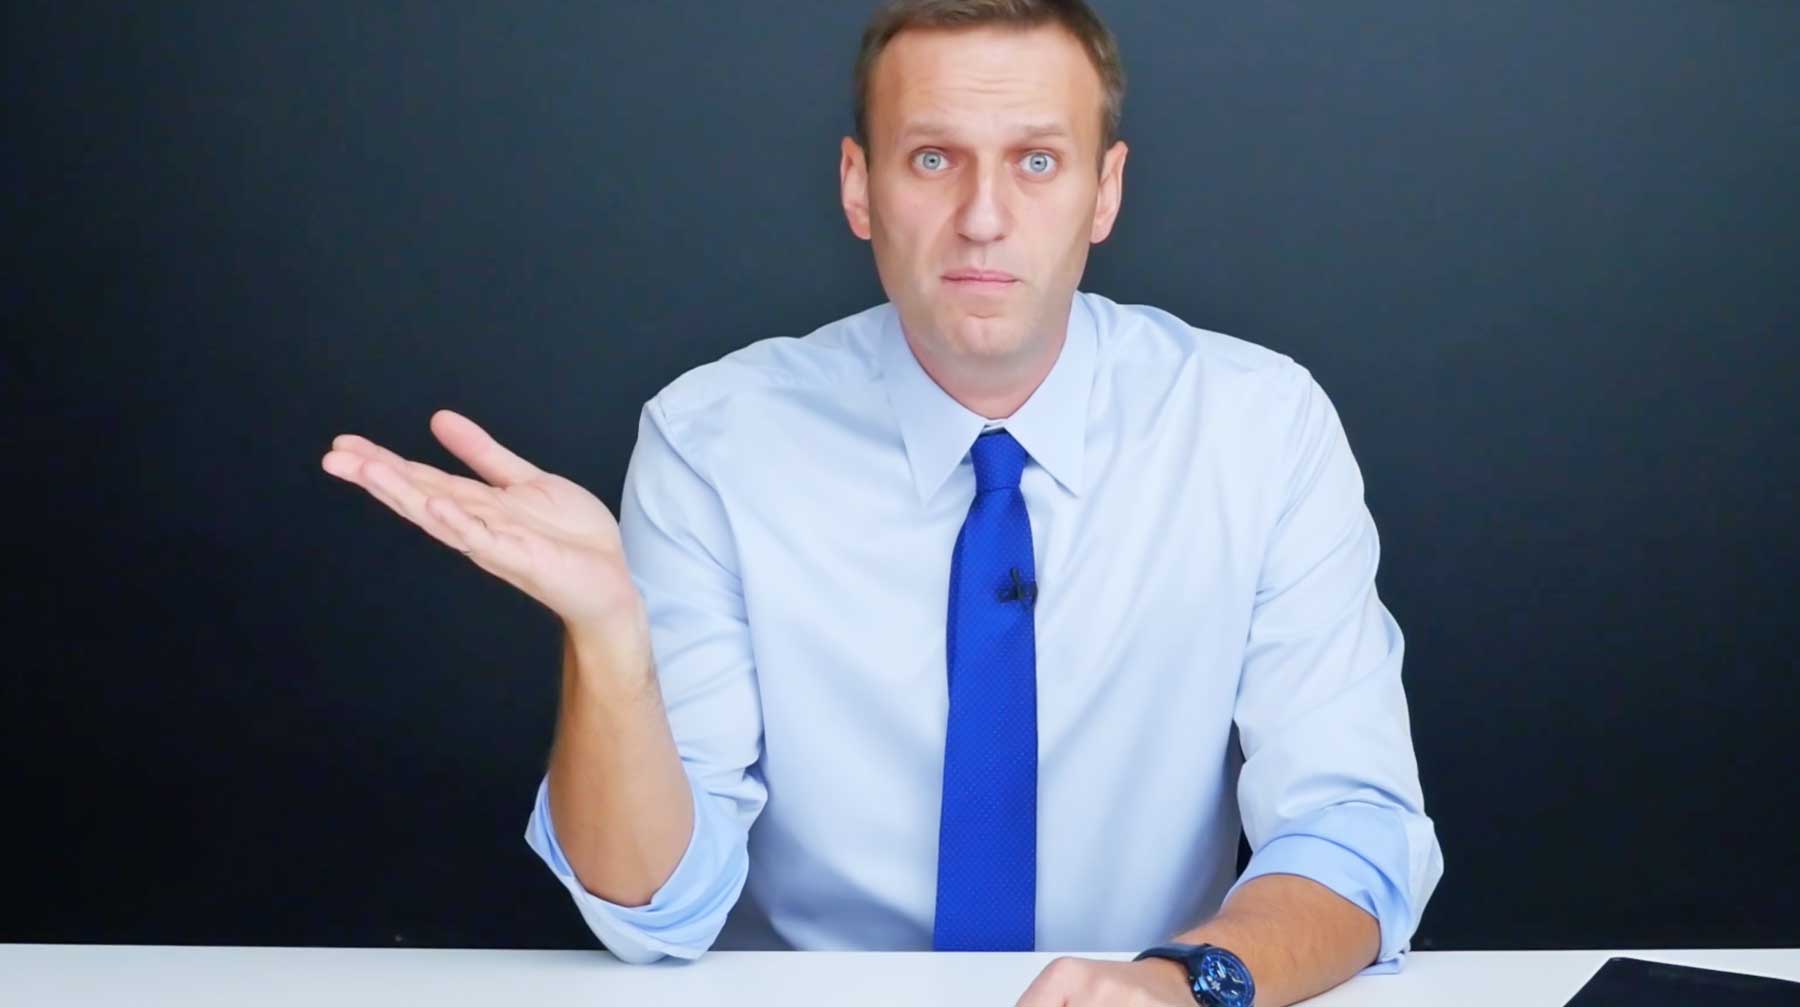 ФБК обнаружил огромный особняк, зарегистрированный на внука экс-президента КЧР Политик, глава Фонда борьбы с коррупцией (ФБК) Алексей Навальный